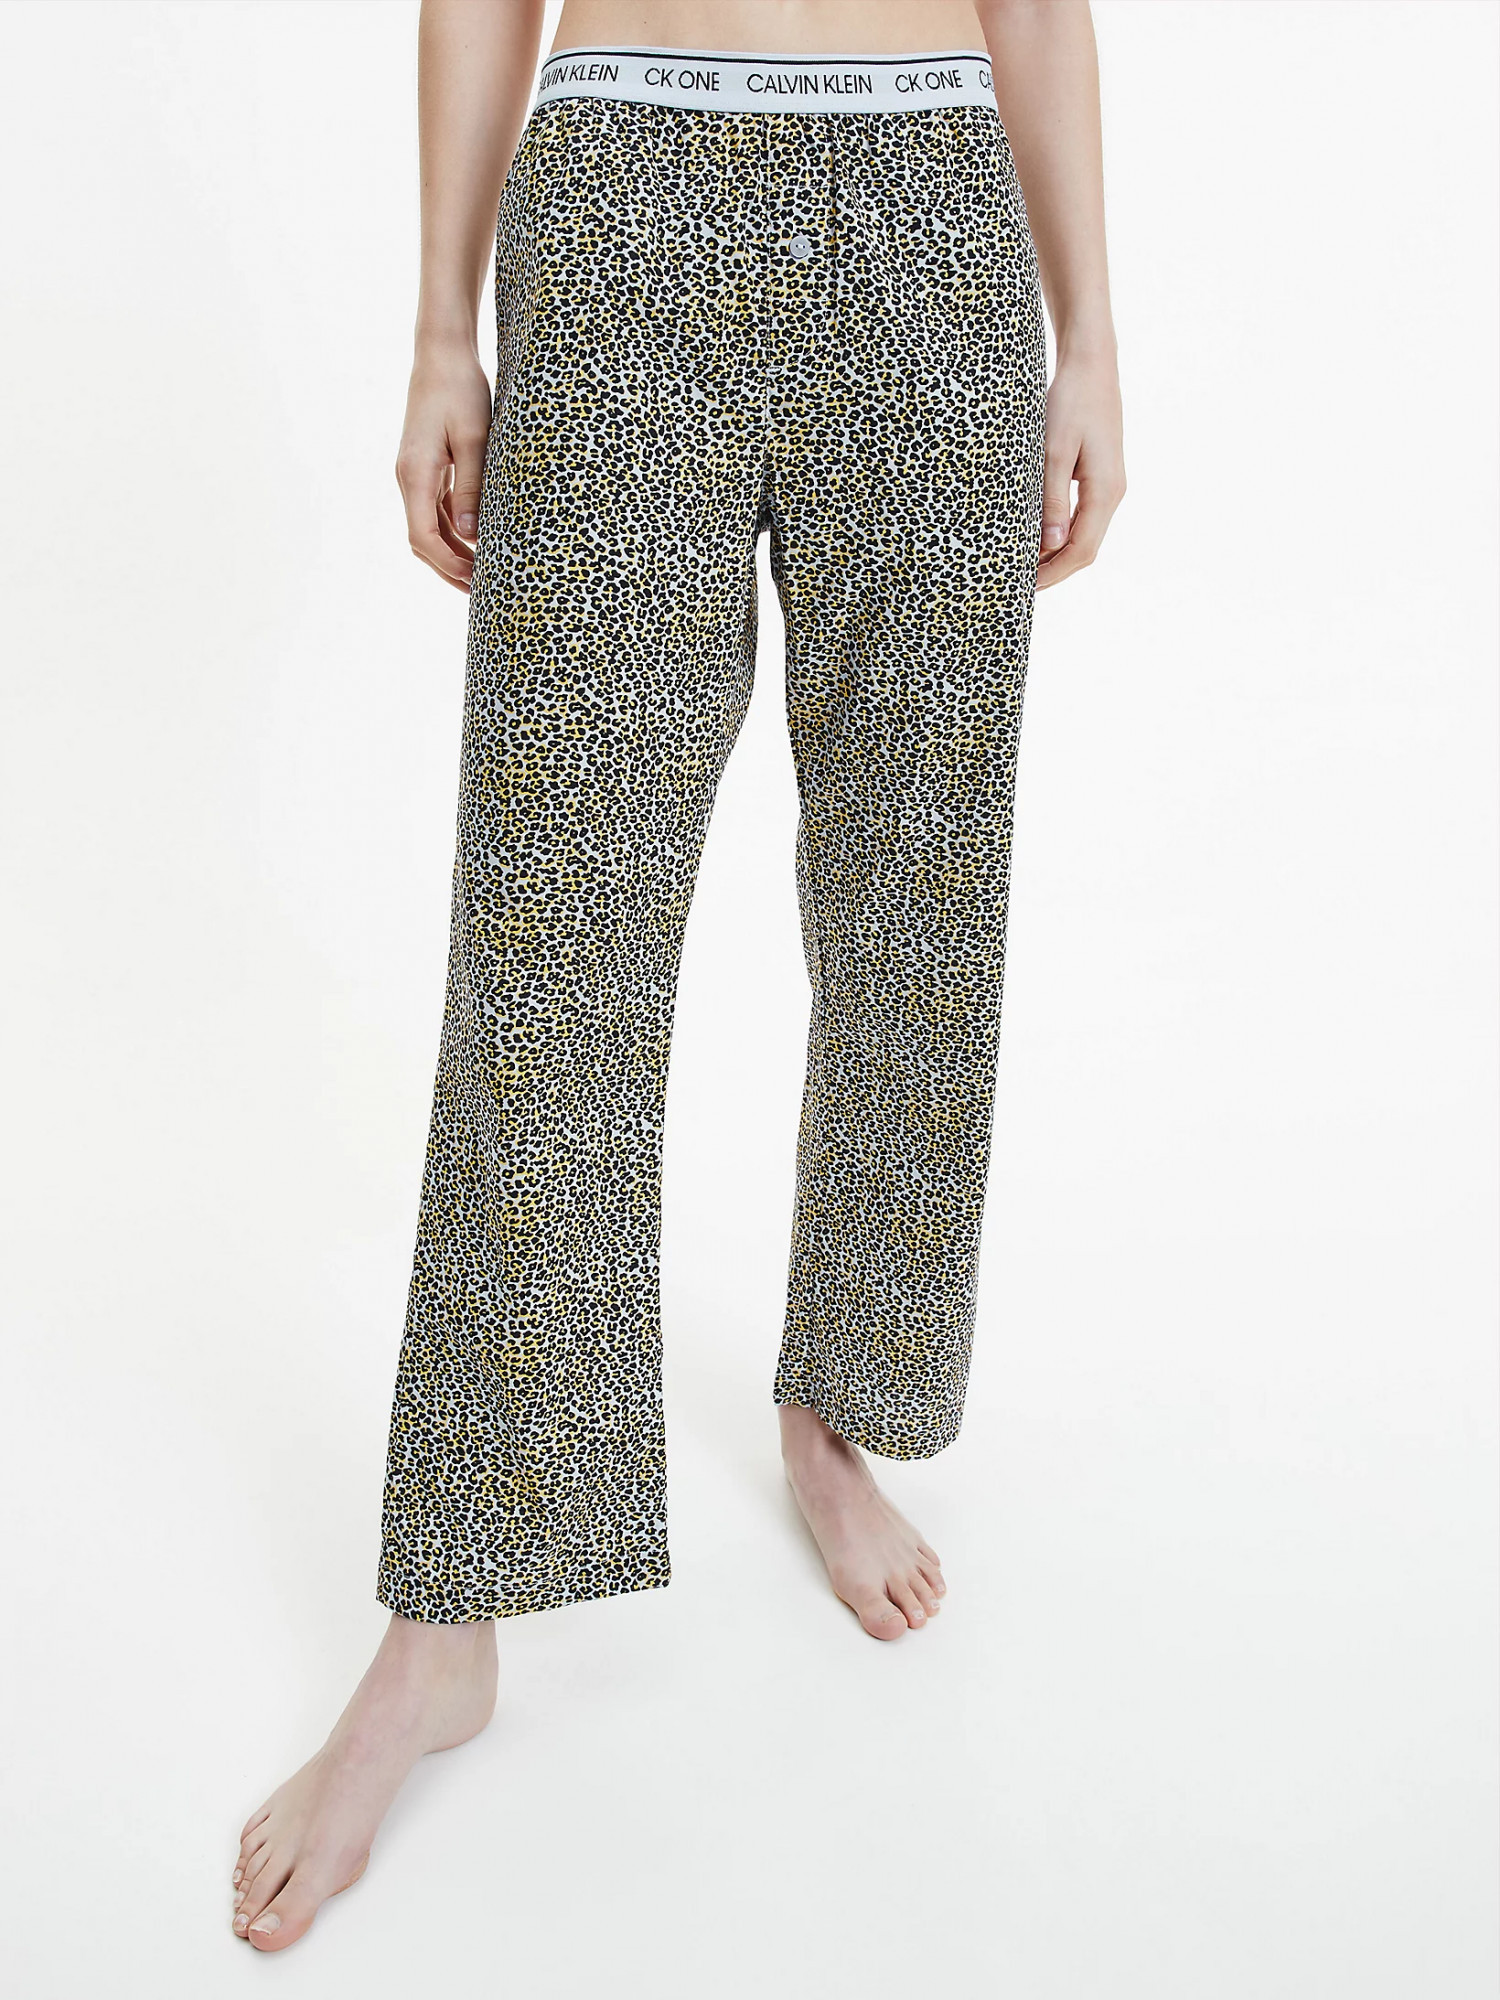 Dámské pyžamové kalhoty Fialová se zvířecím vzorem M fialový vzor model 17089255 - Calvin Klein